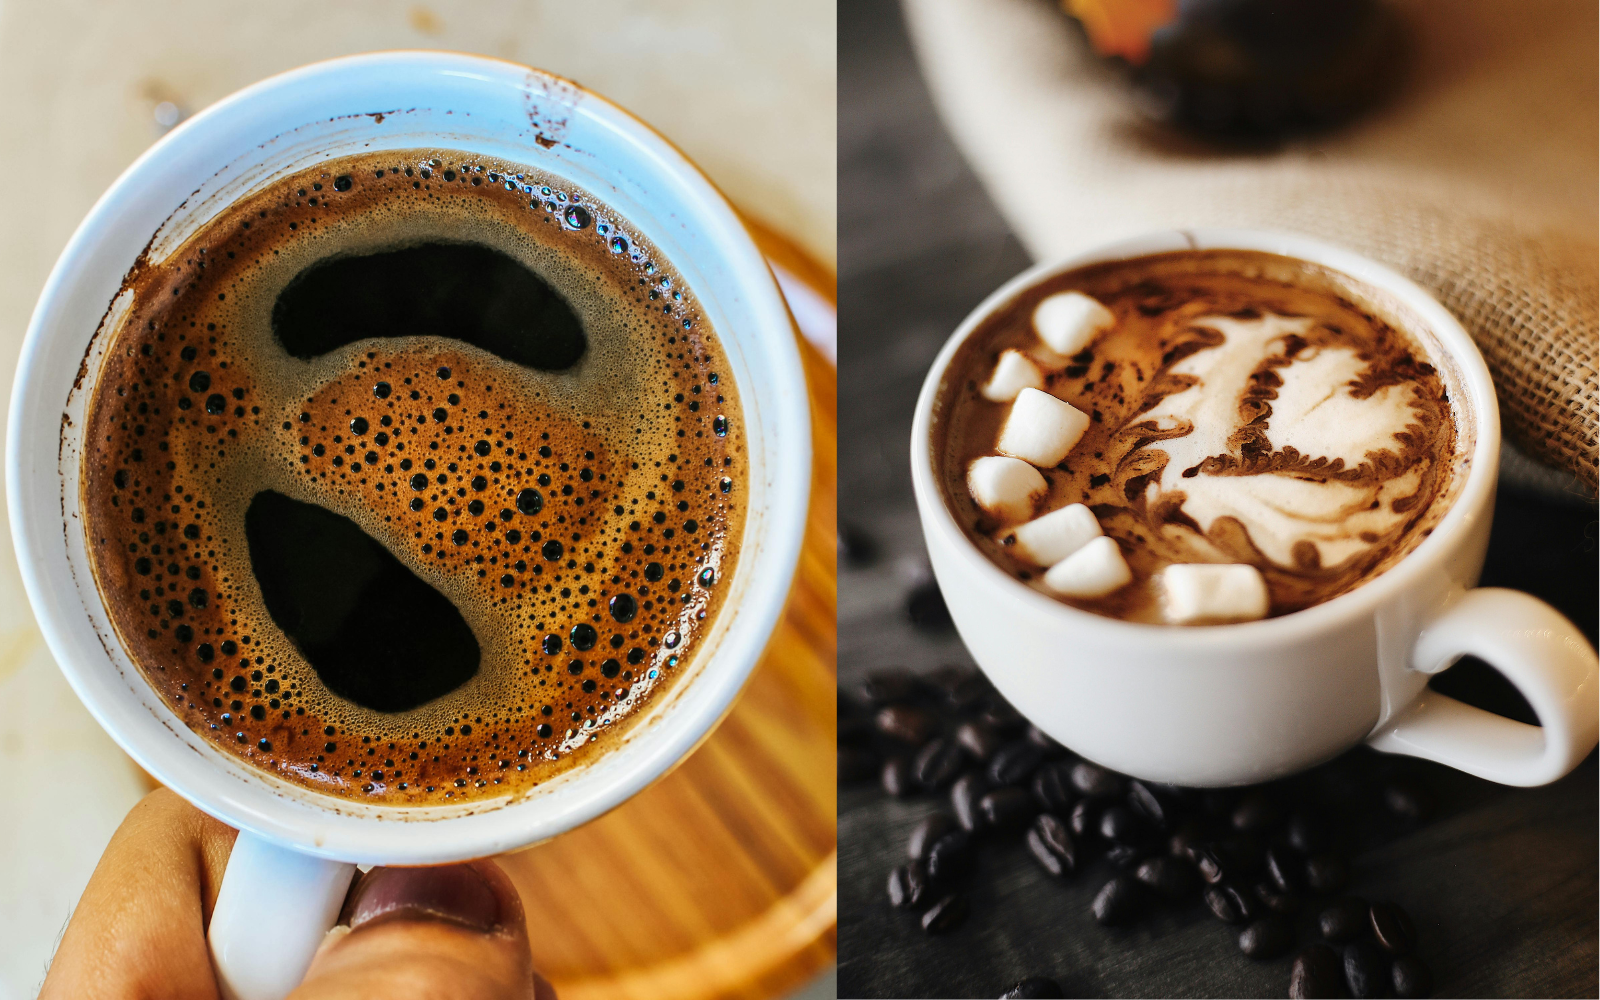 Espresso vs Cappuccino - What's the major difference?